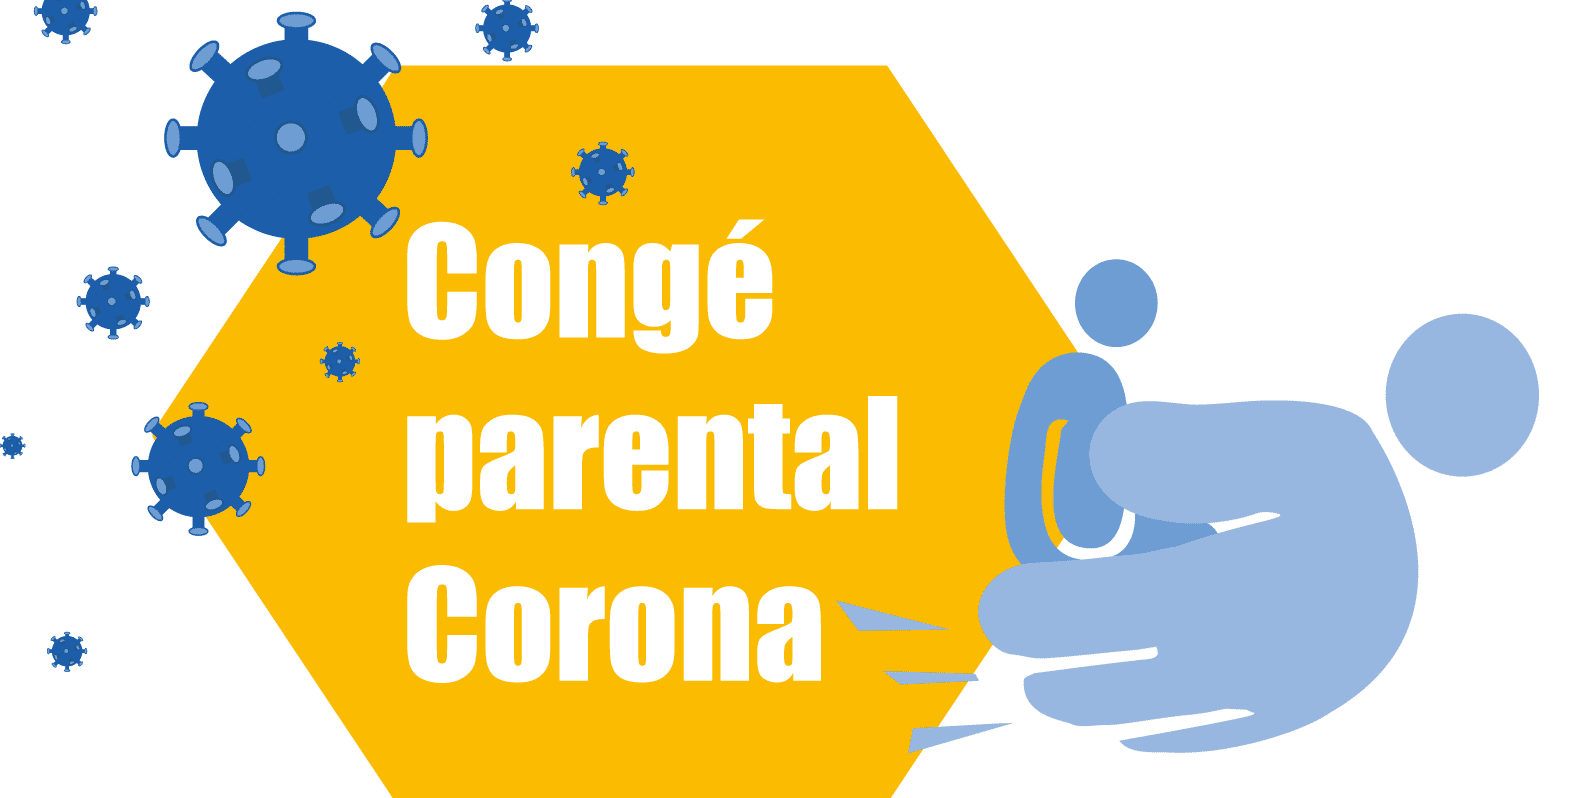 Congé Parental Corona - Réponse à vos questions